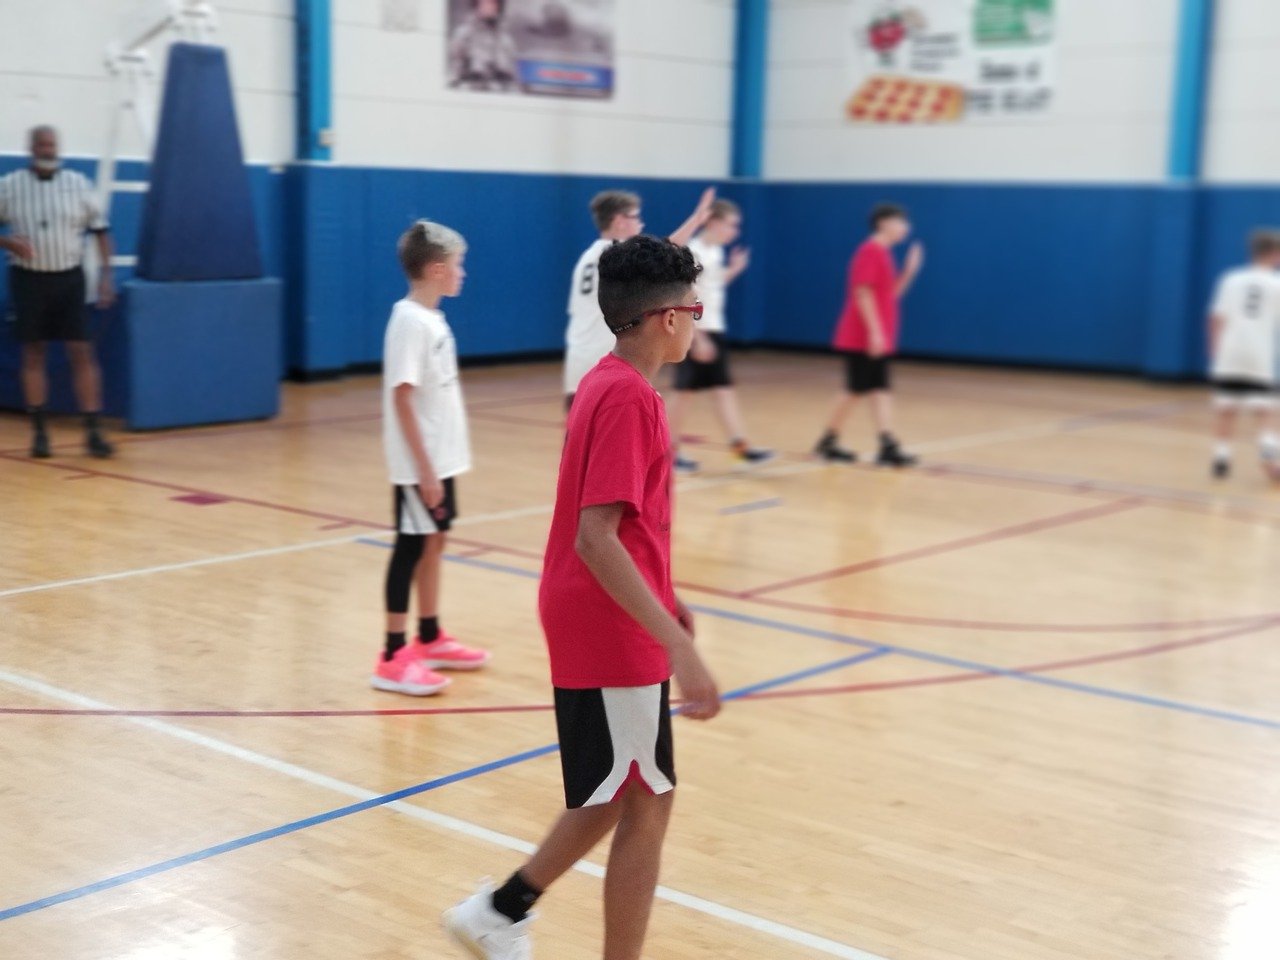 Cómo enseñar básquetbol a niños de primaria?